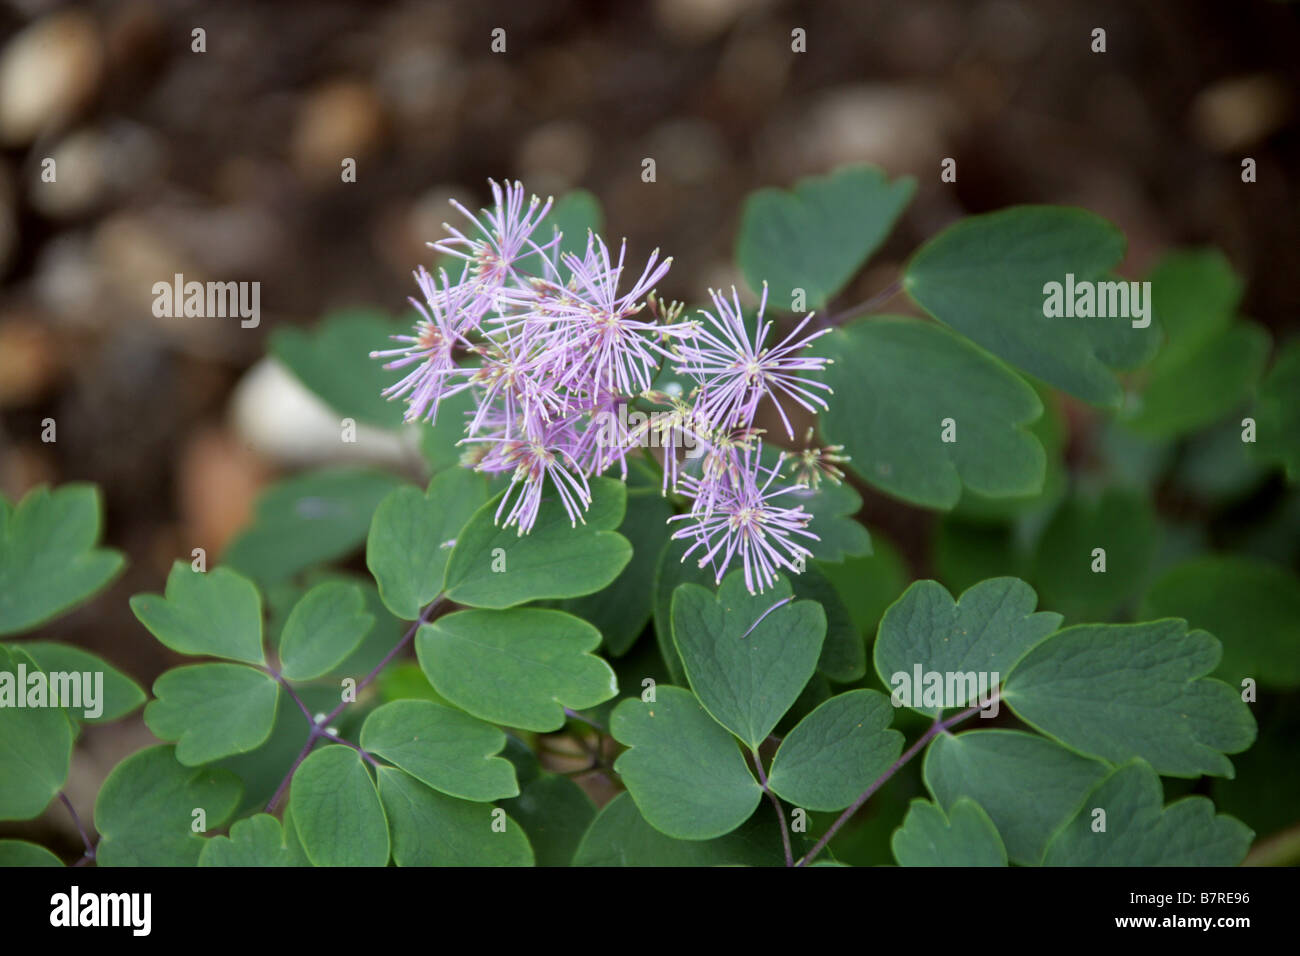 Columbine Meadow Rue, Thalictrum aquilegiifolium, Ranunculaceae Stock Photo